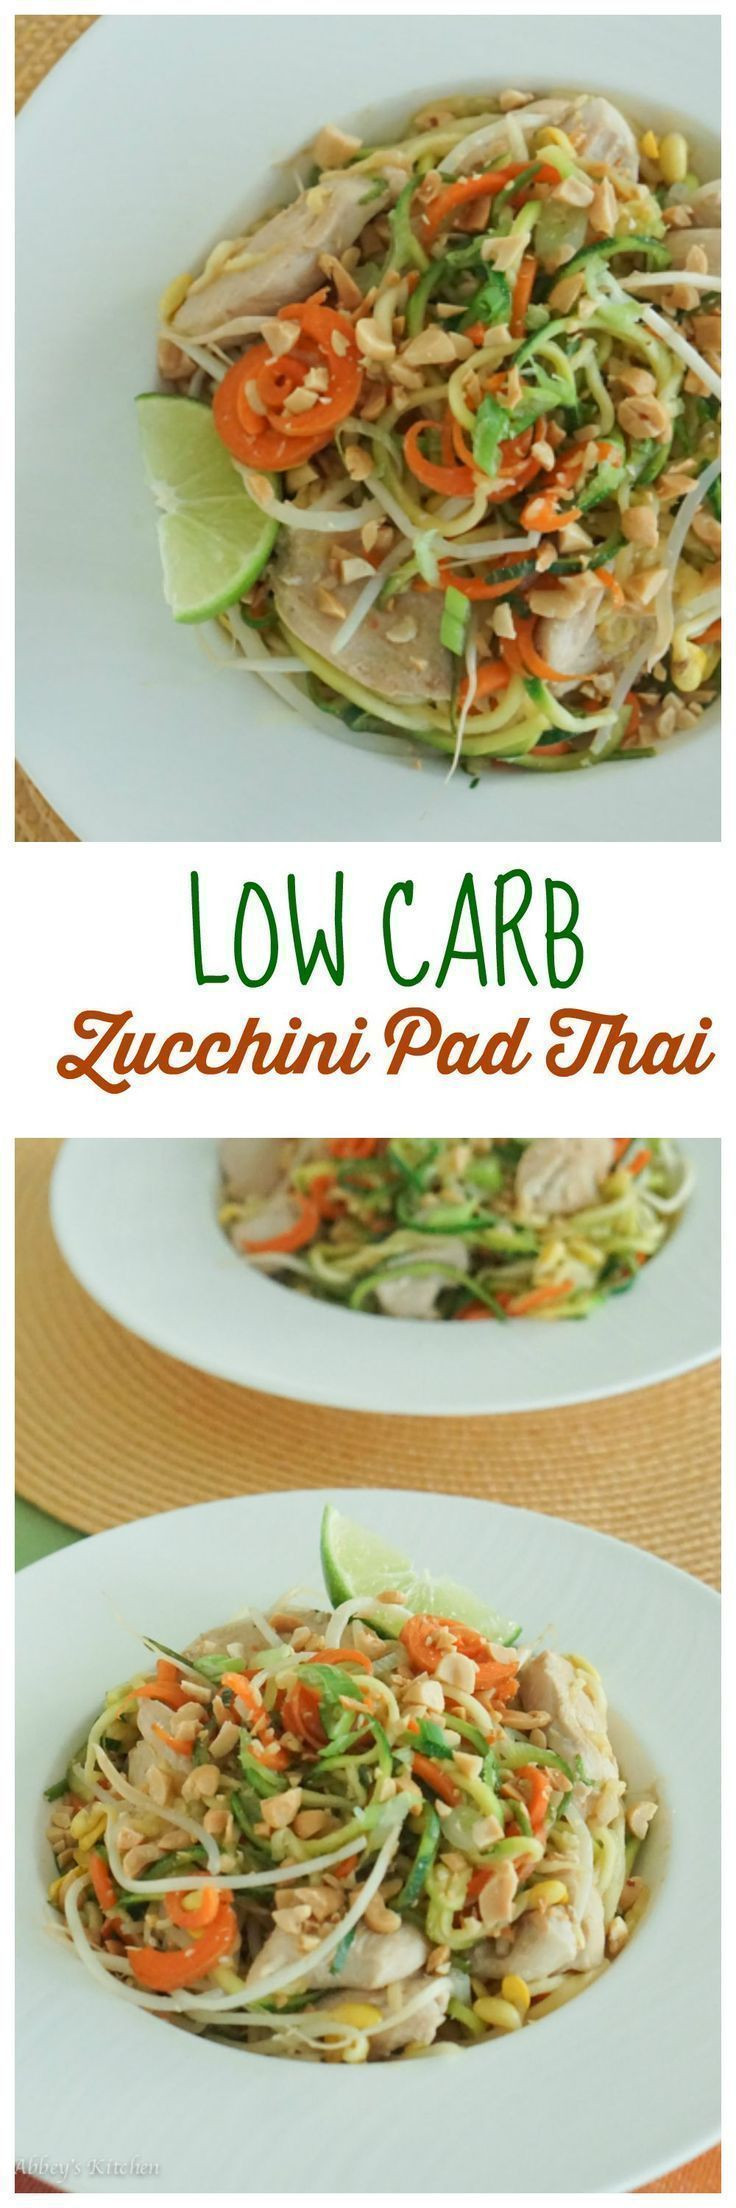 Low Calorie Pad Thai
 Zucchini Noodle Healthy Pad Thai